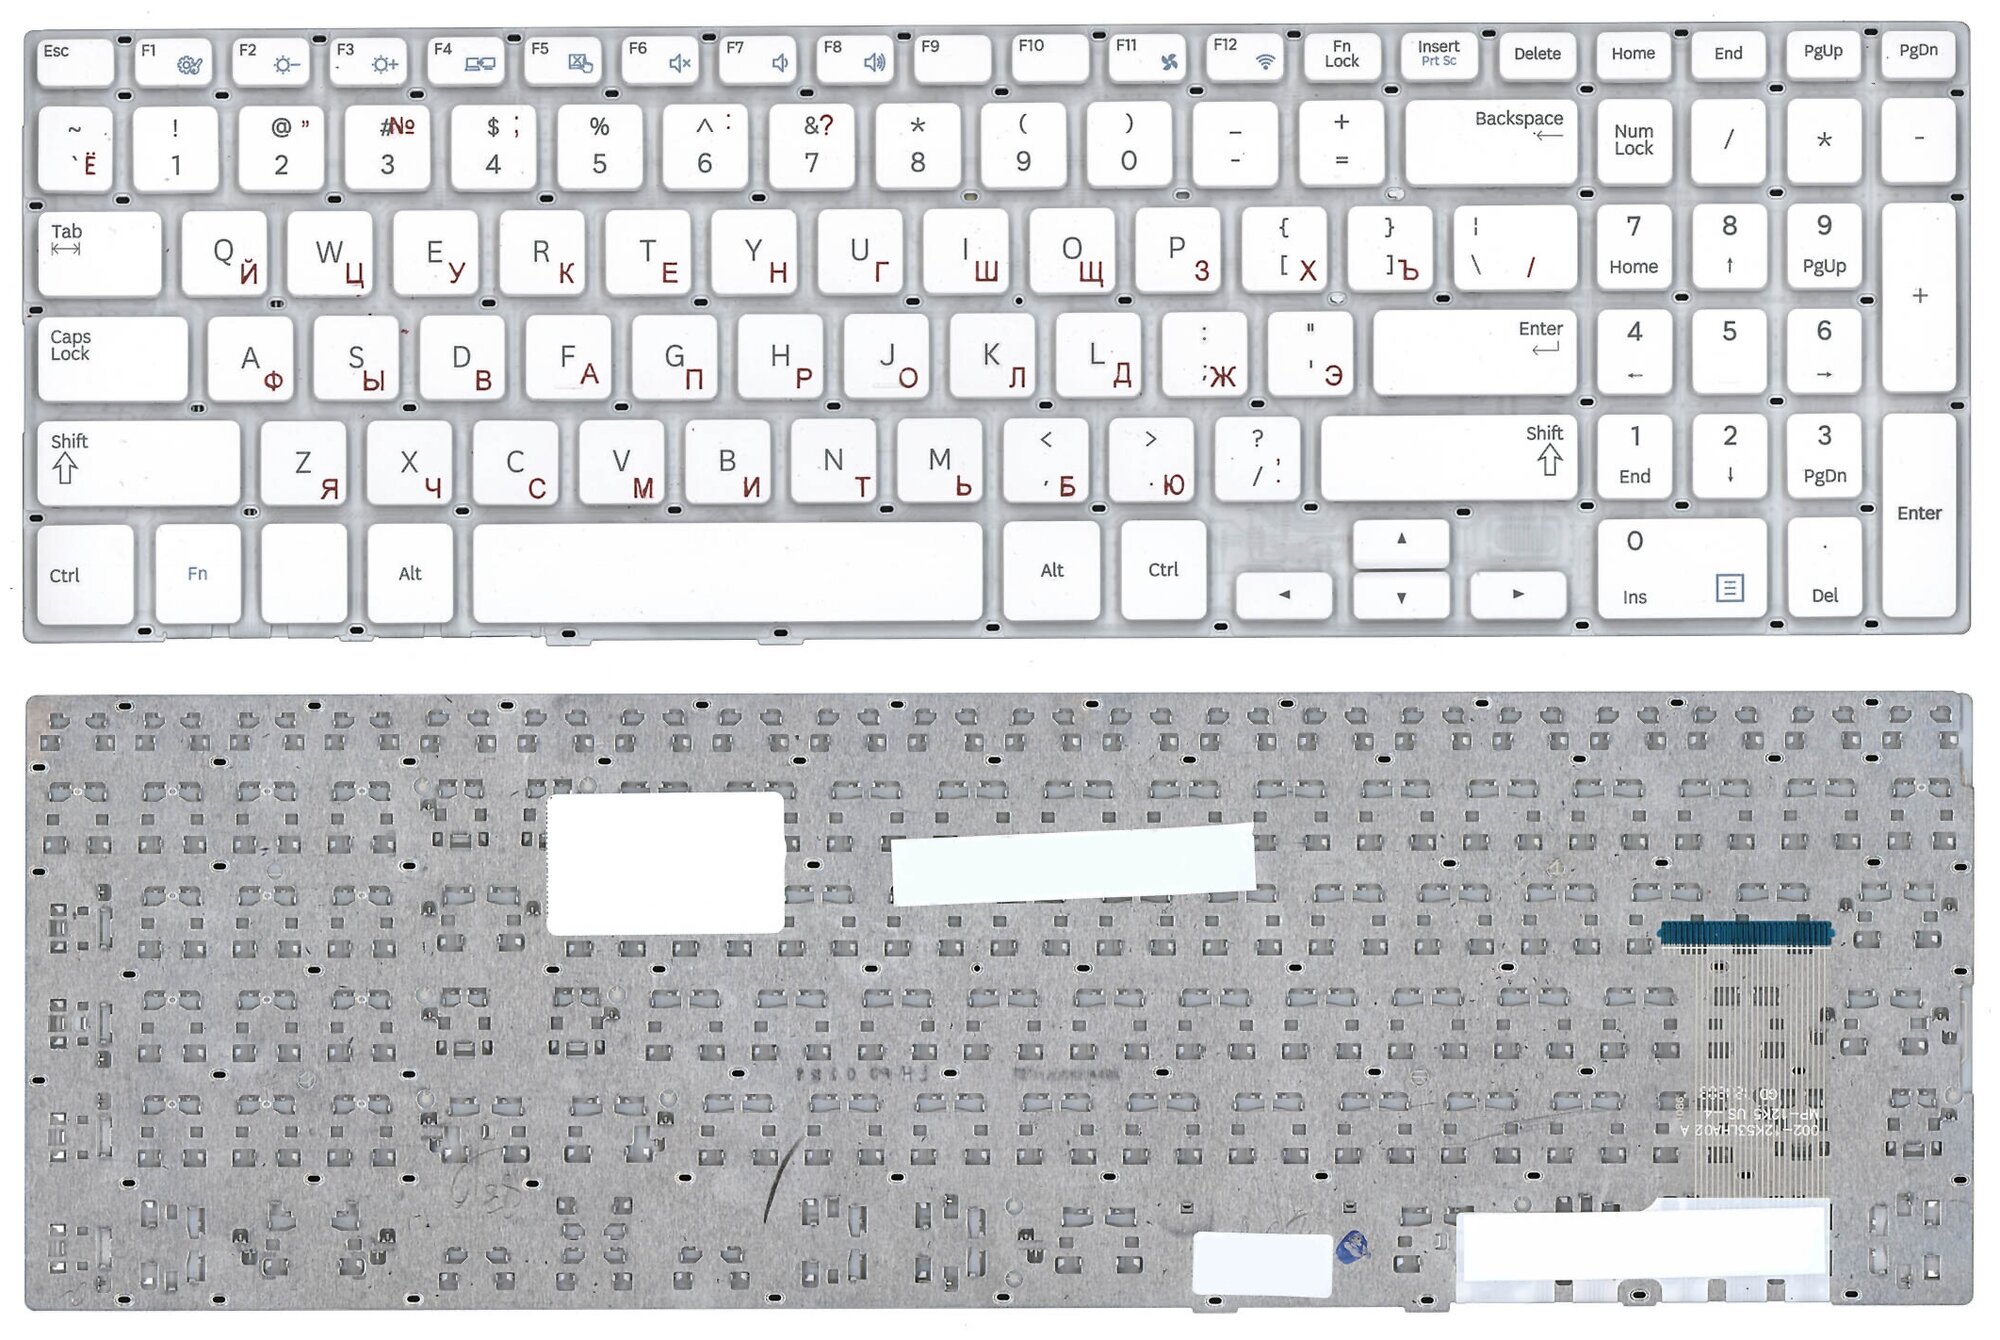 Клавиатура для ноутбука Samsung NP370R5E NP450R5E NP470R5E белая